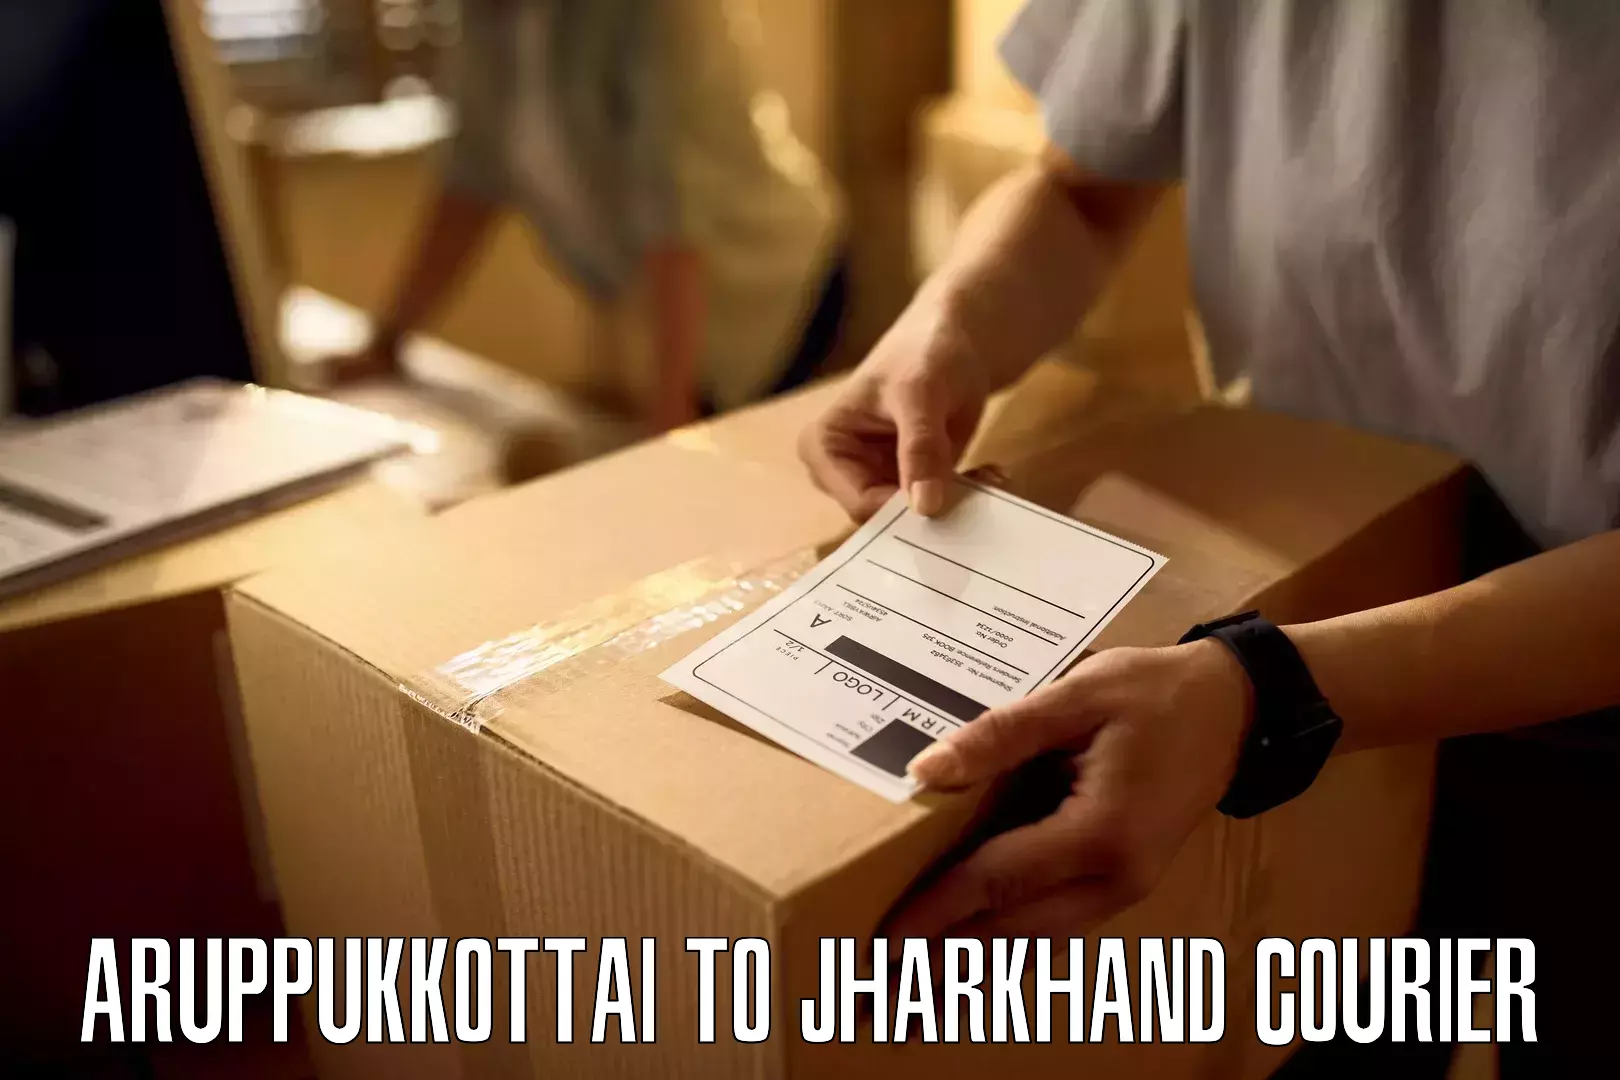 User-friendly delivery service Aruppukkottai to Jagannathpur